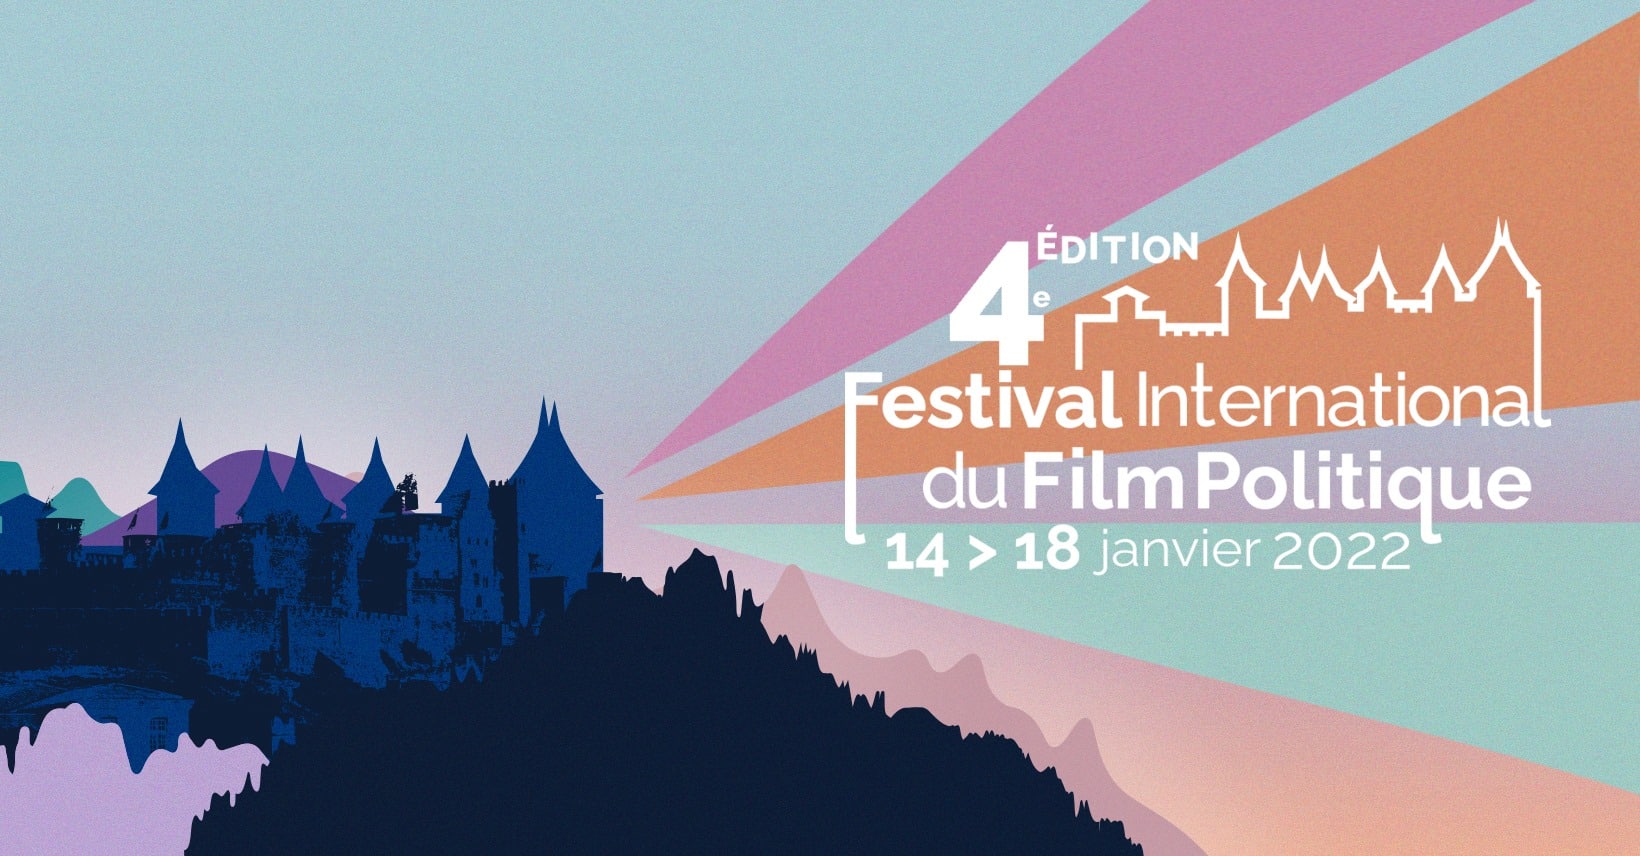 Festival international film politique Carcassonne affiche 